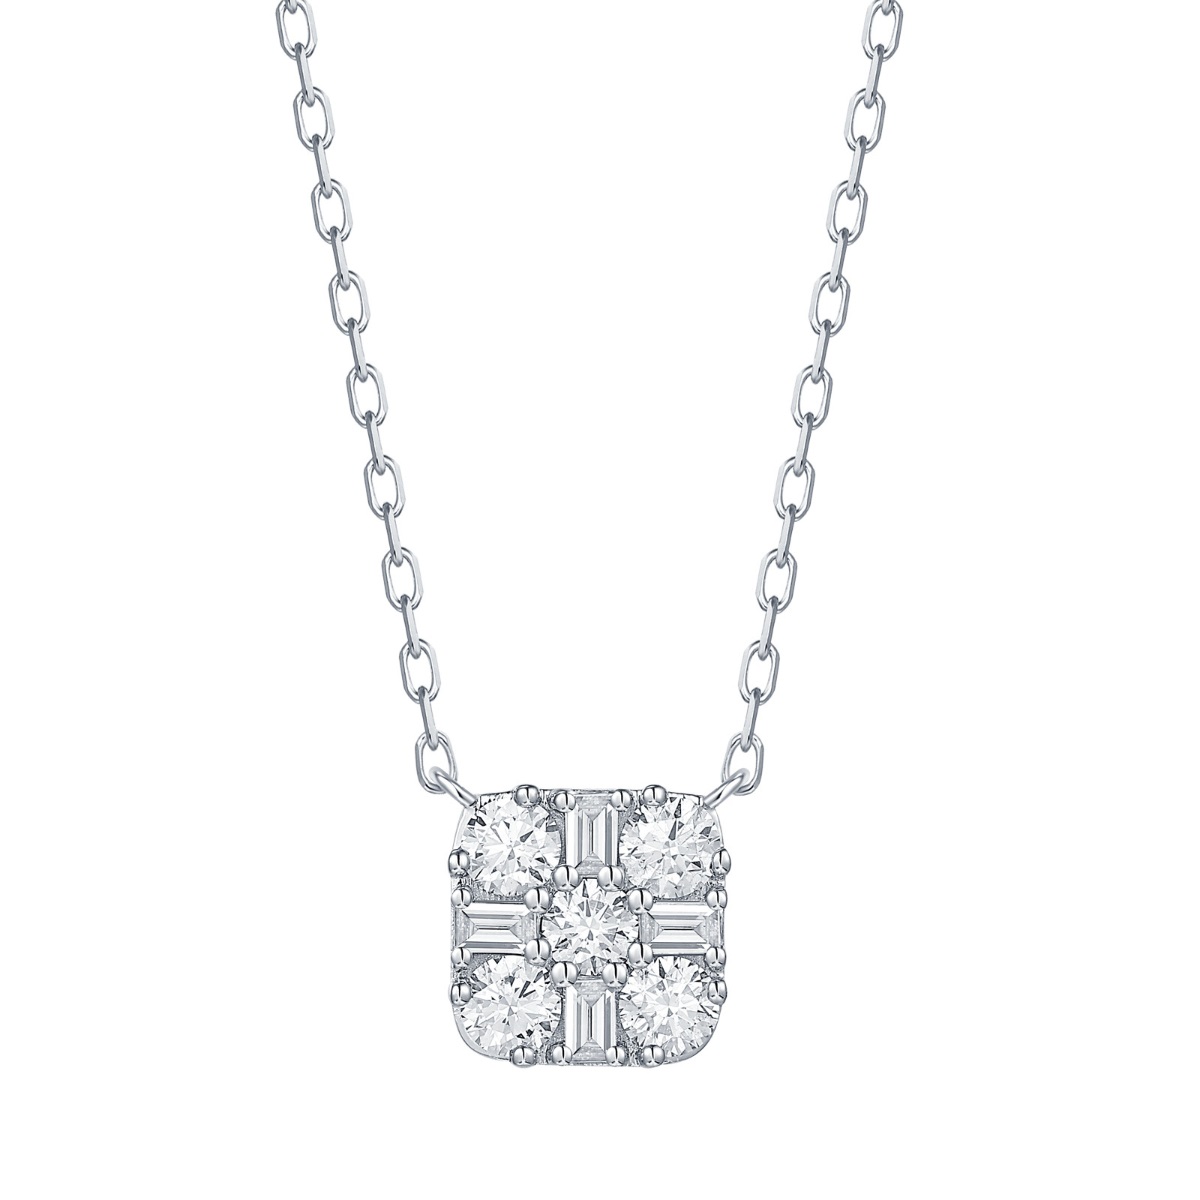 NL36991WHT – 18K White Gold Diamond Necklace, 0.54 TCW